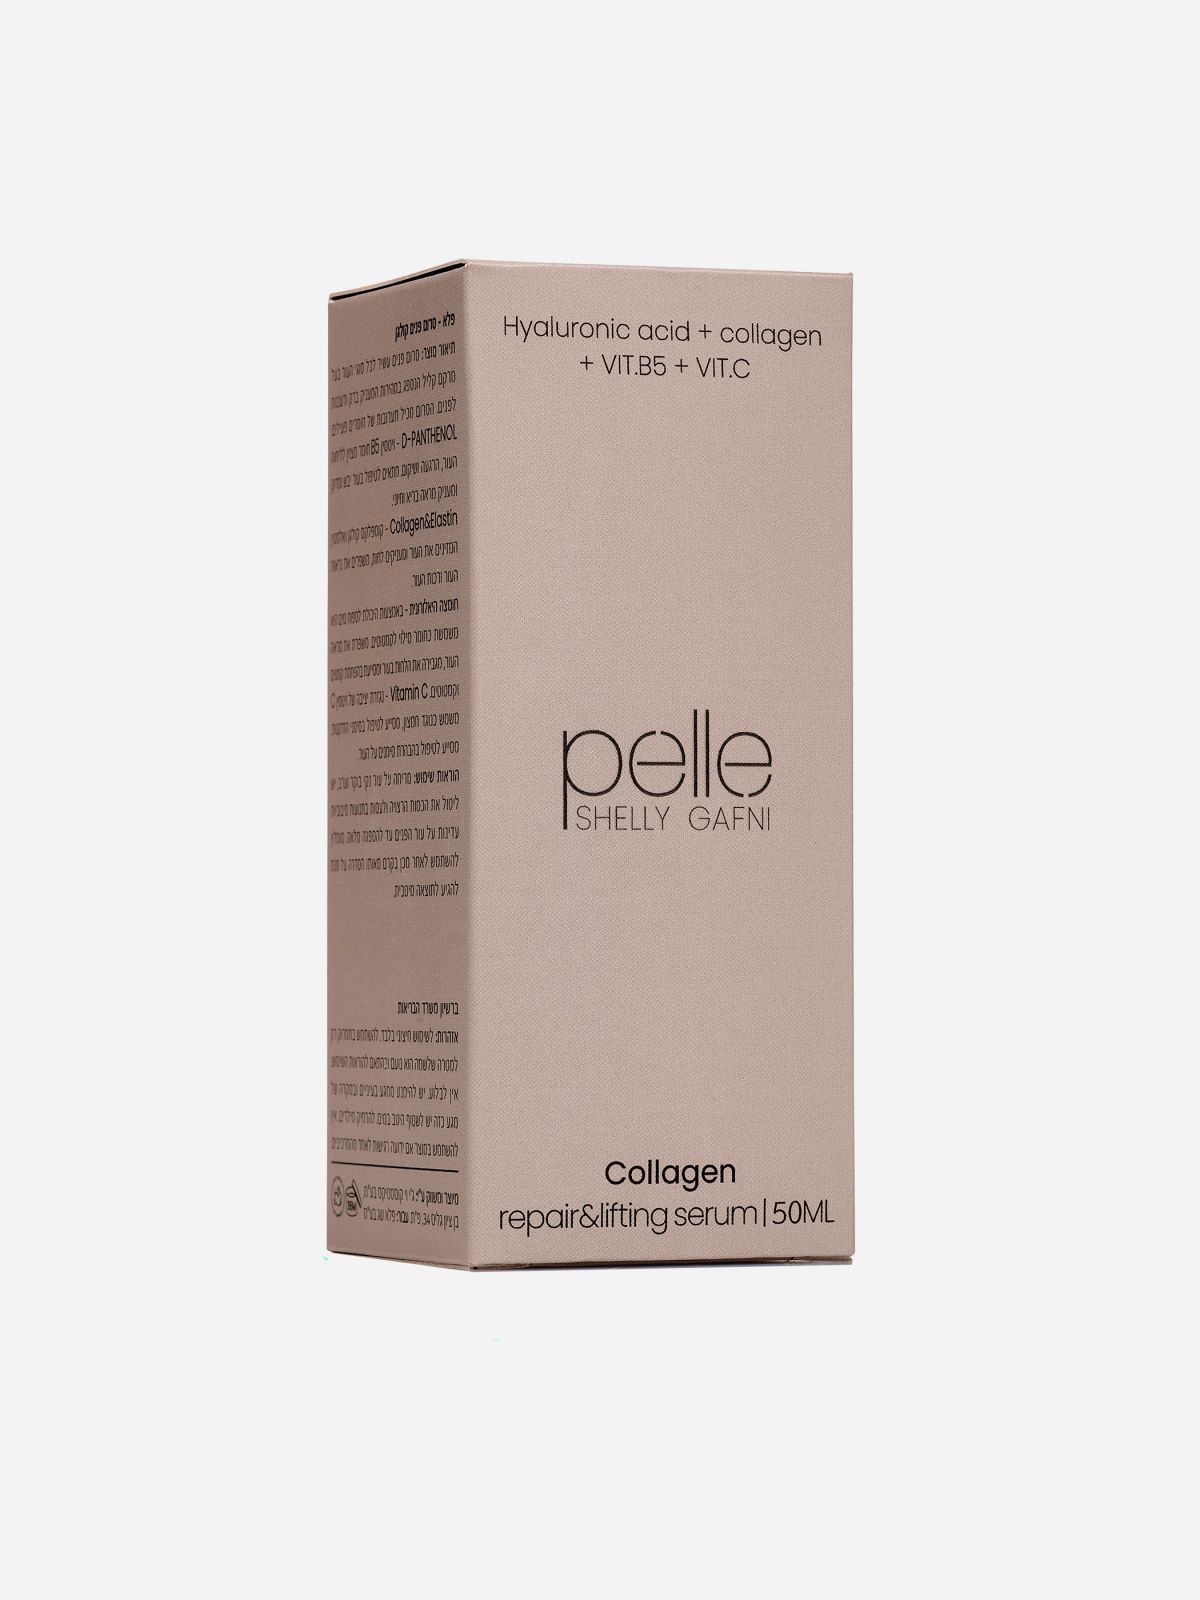  סרום קולגן Collagen repair & lifting serum של PELLE